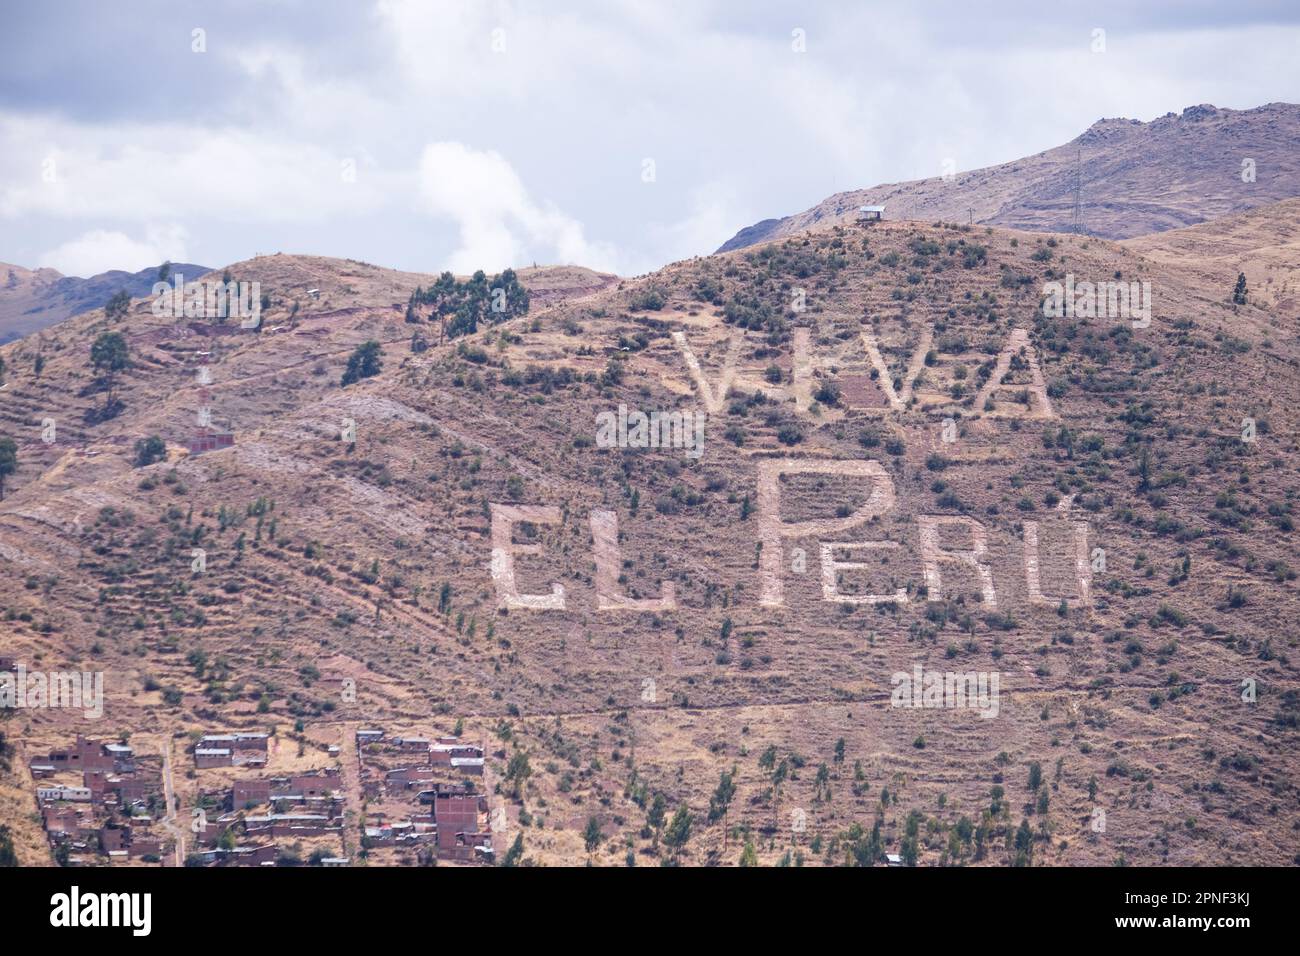 Viva El Peru schreibt auf dem Andenberg Cusco Peru. Viva el Peru bedeutet lang lebe Peru in spanischer Sprache. Symbol von Cusco. Stockfoto